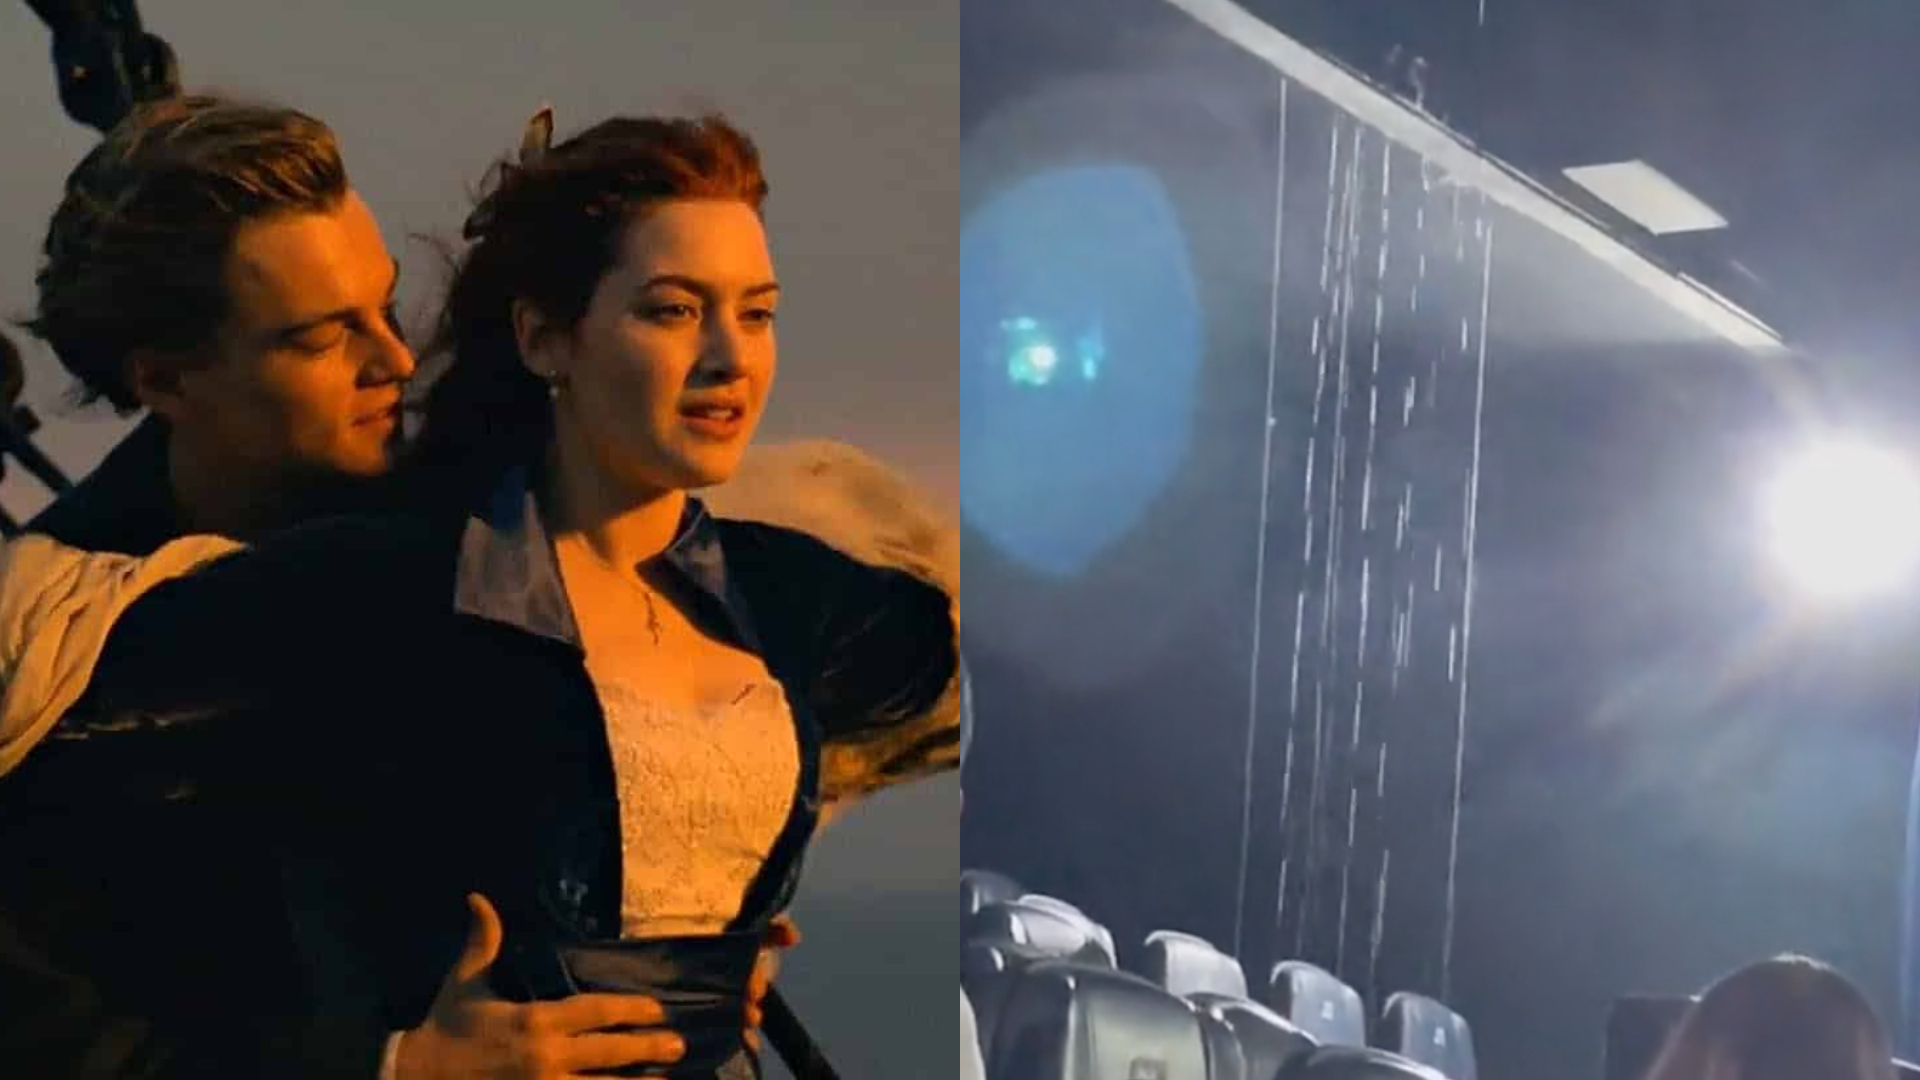 Cinema no RJ alaga durante exibição de “Titanic” e vídeo viraliza: “Mais realista do que imaginei”; assista